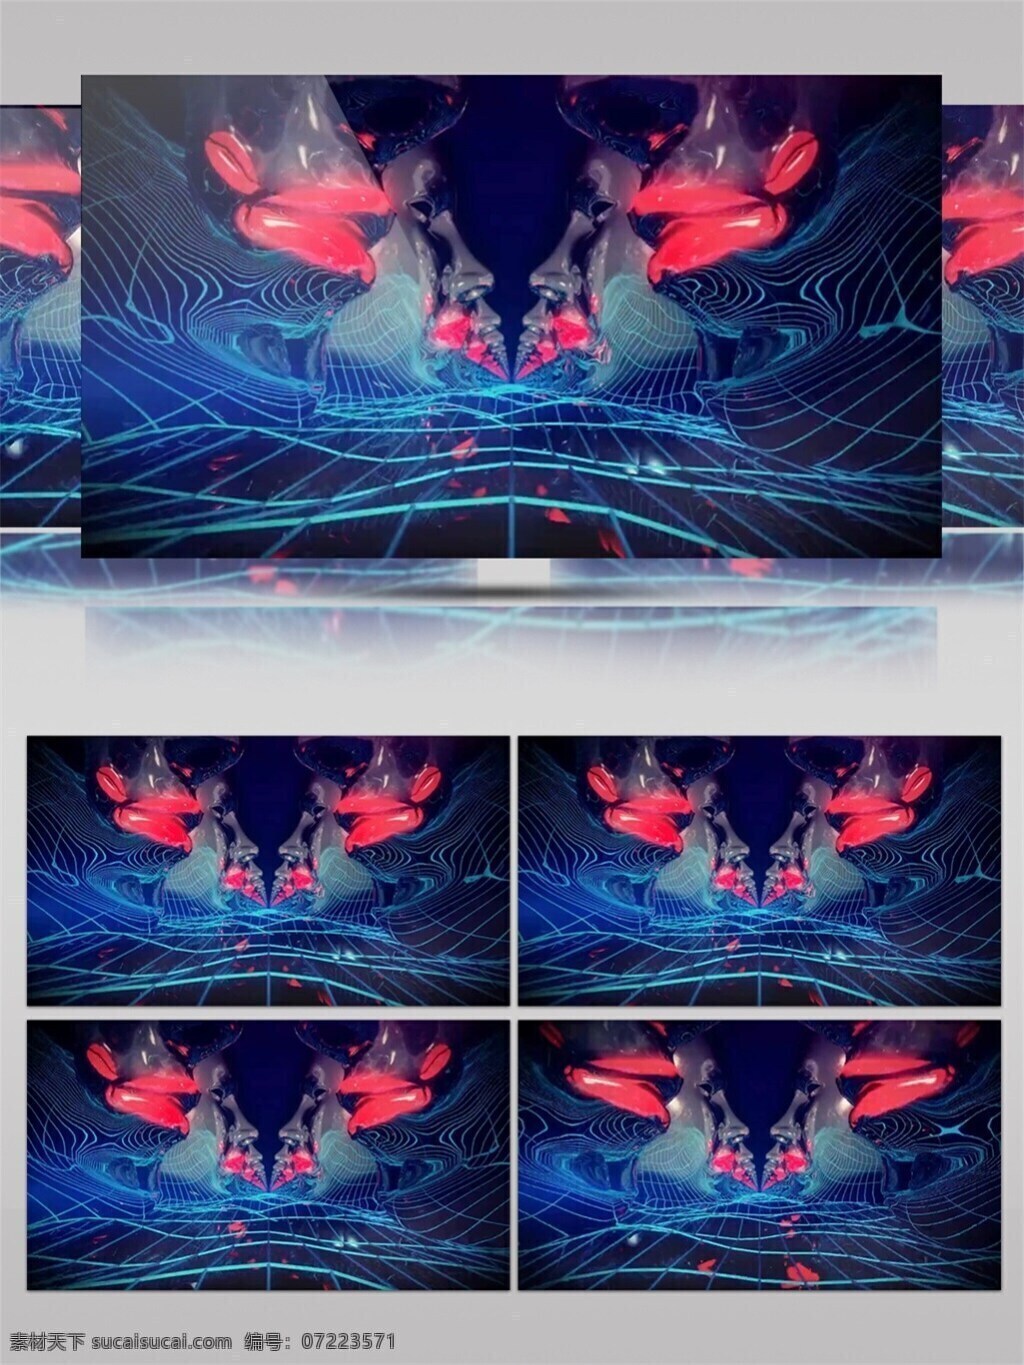 梦幻 演唱会 现场 高清 视频 3d视频素材 创新 光幕 科技 数字 特效视频素材 摇滚 音乐 宇宙